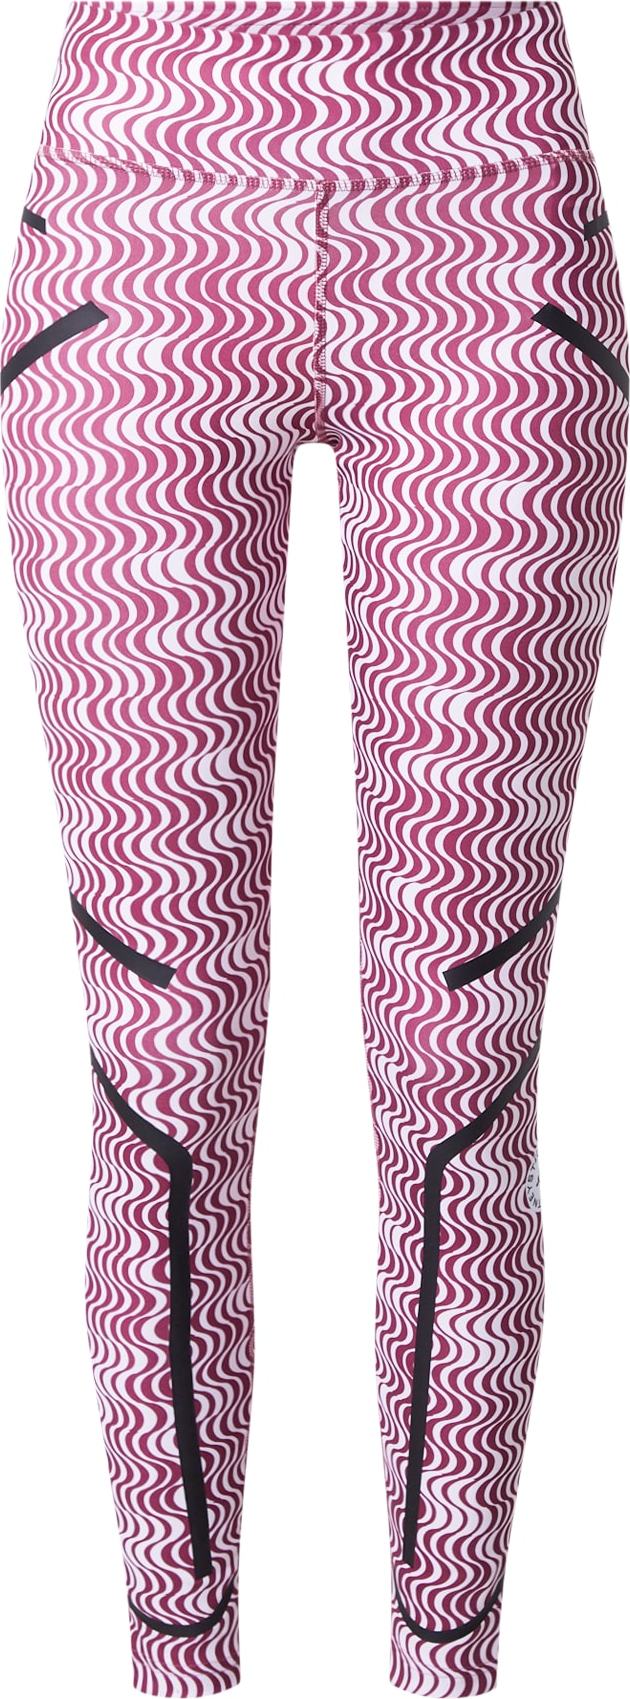 ADIDAS BY STELLA MCCARTNEY Sportovní kalhoty 'TruePurpose' pink / černá / bílá